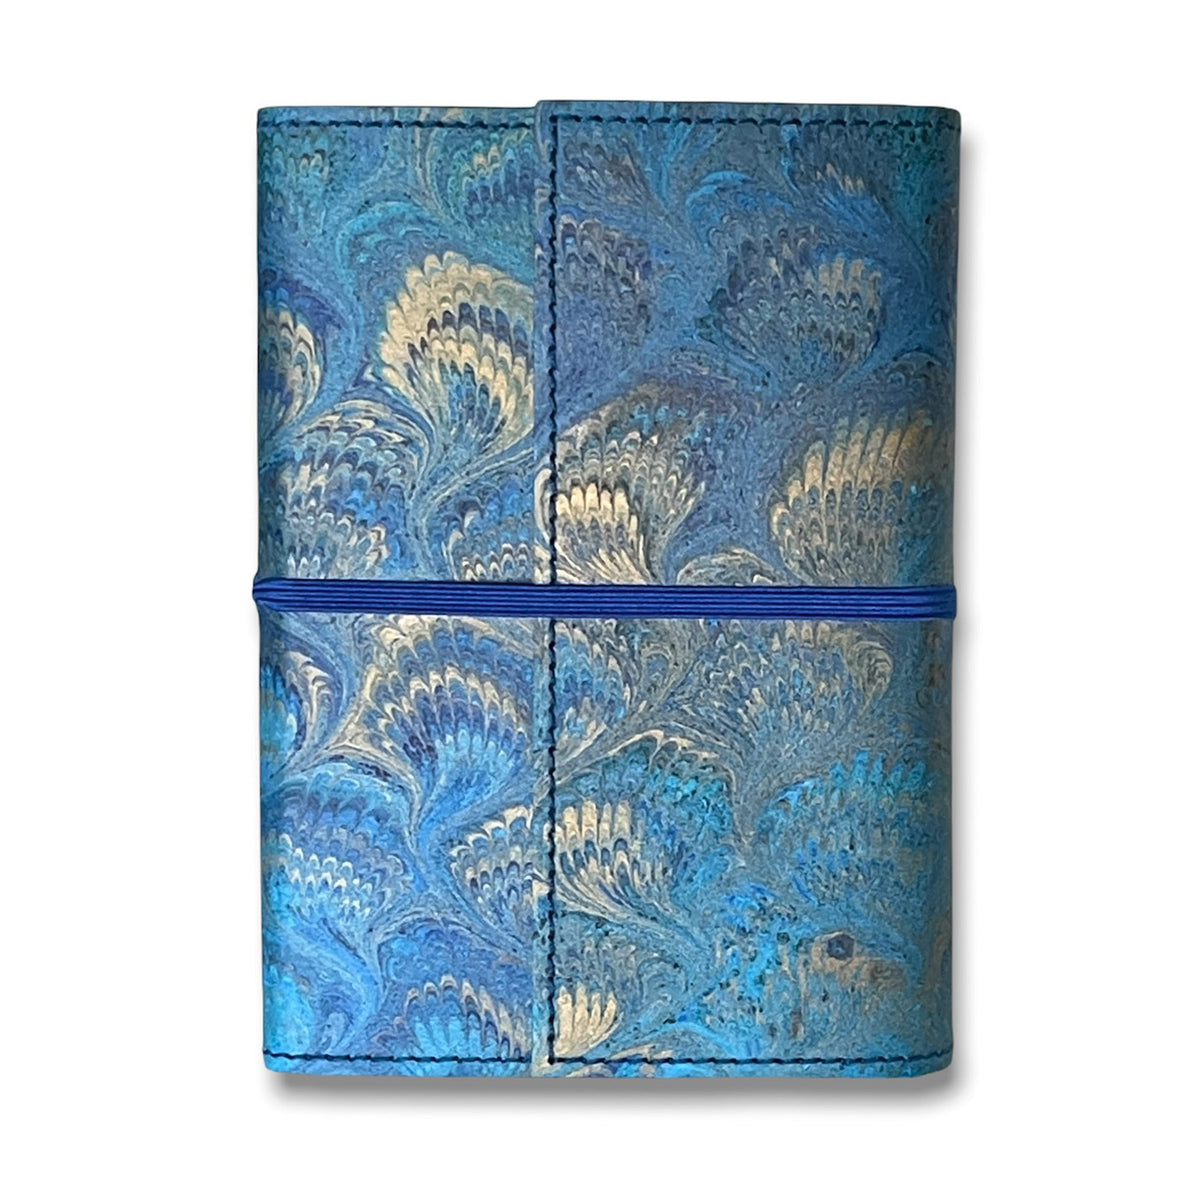 Florentine Sketchbook Marble Blue Leather